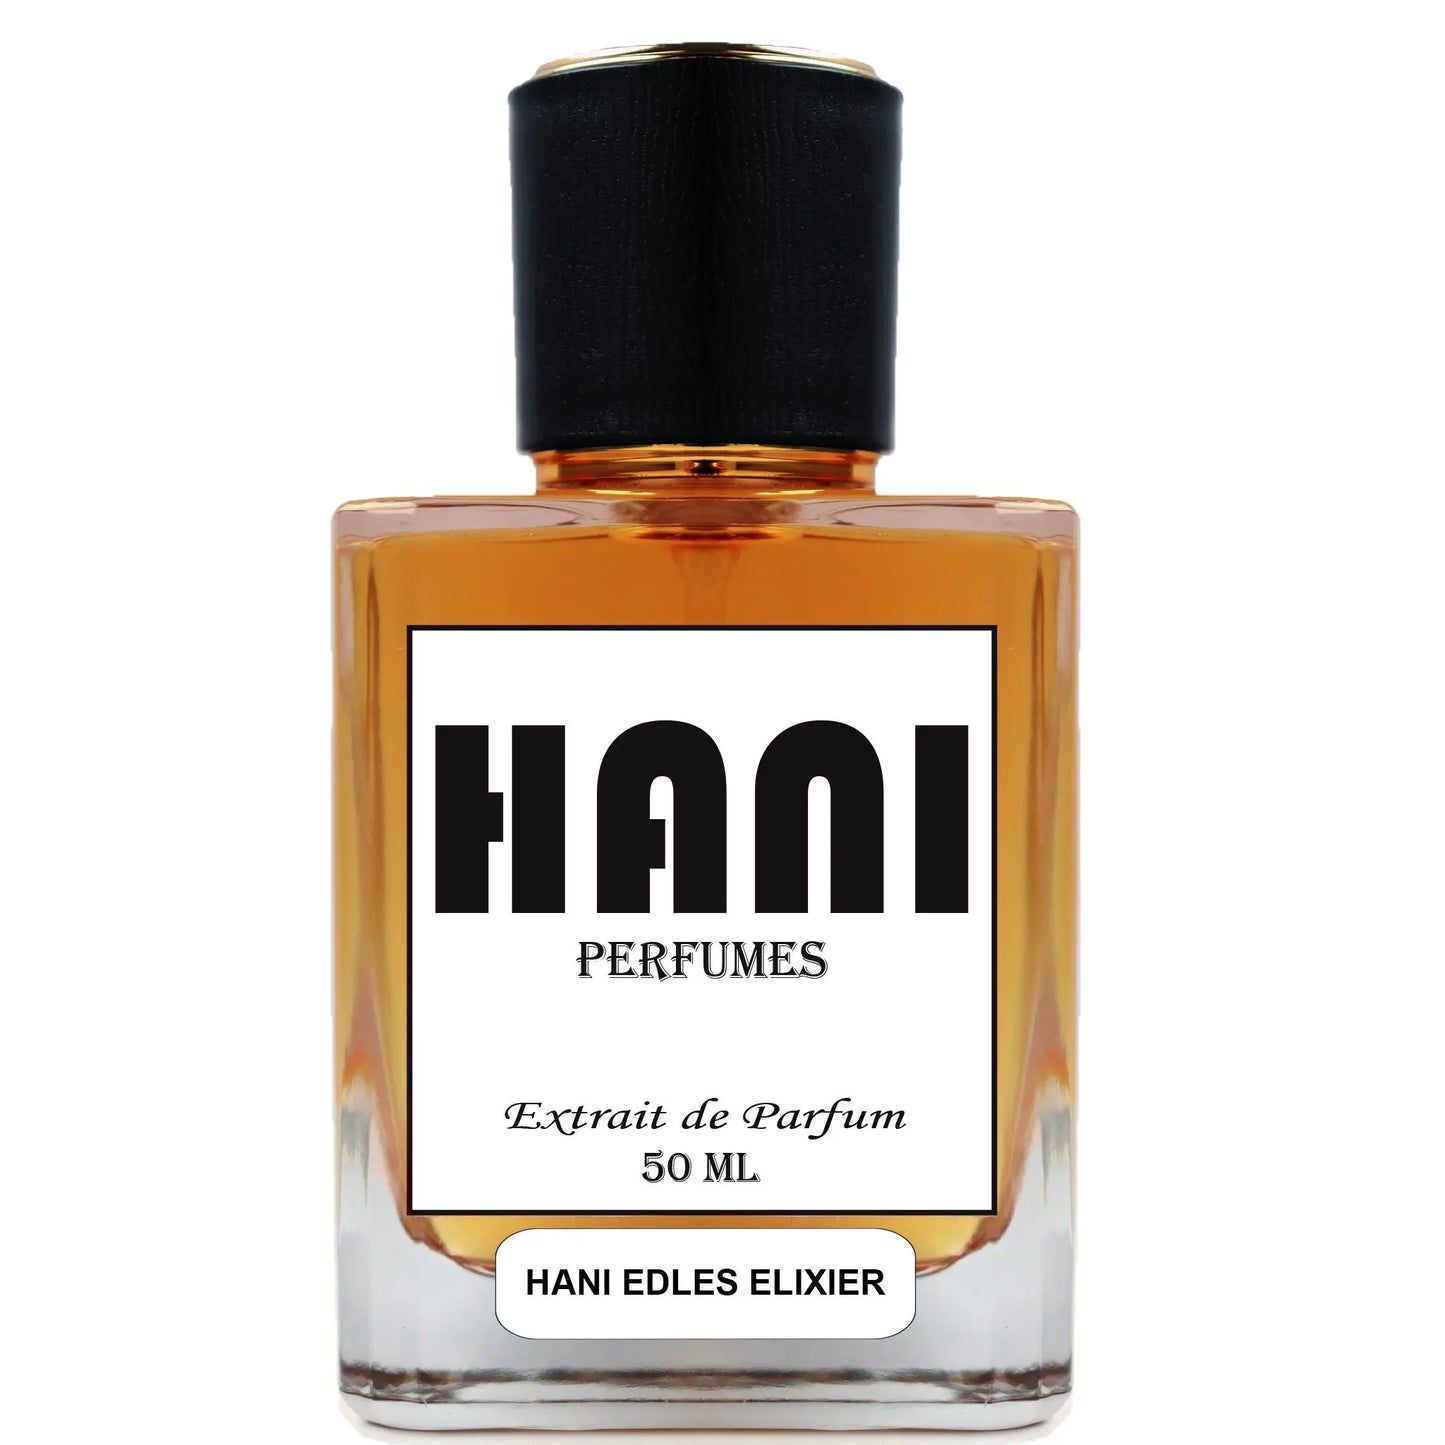 HANI EDLES ELIXIER Unisex Parfum duftzwilling parfum dupe